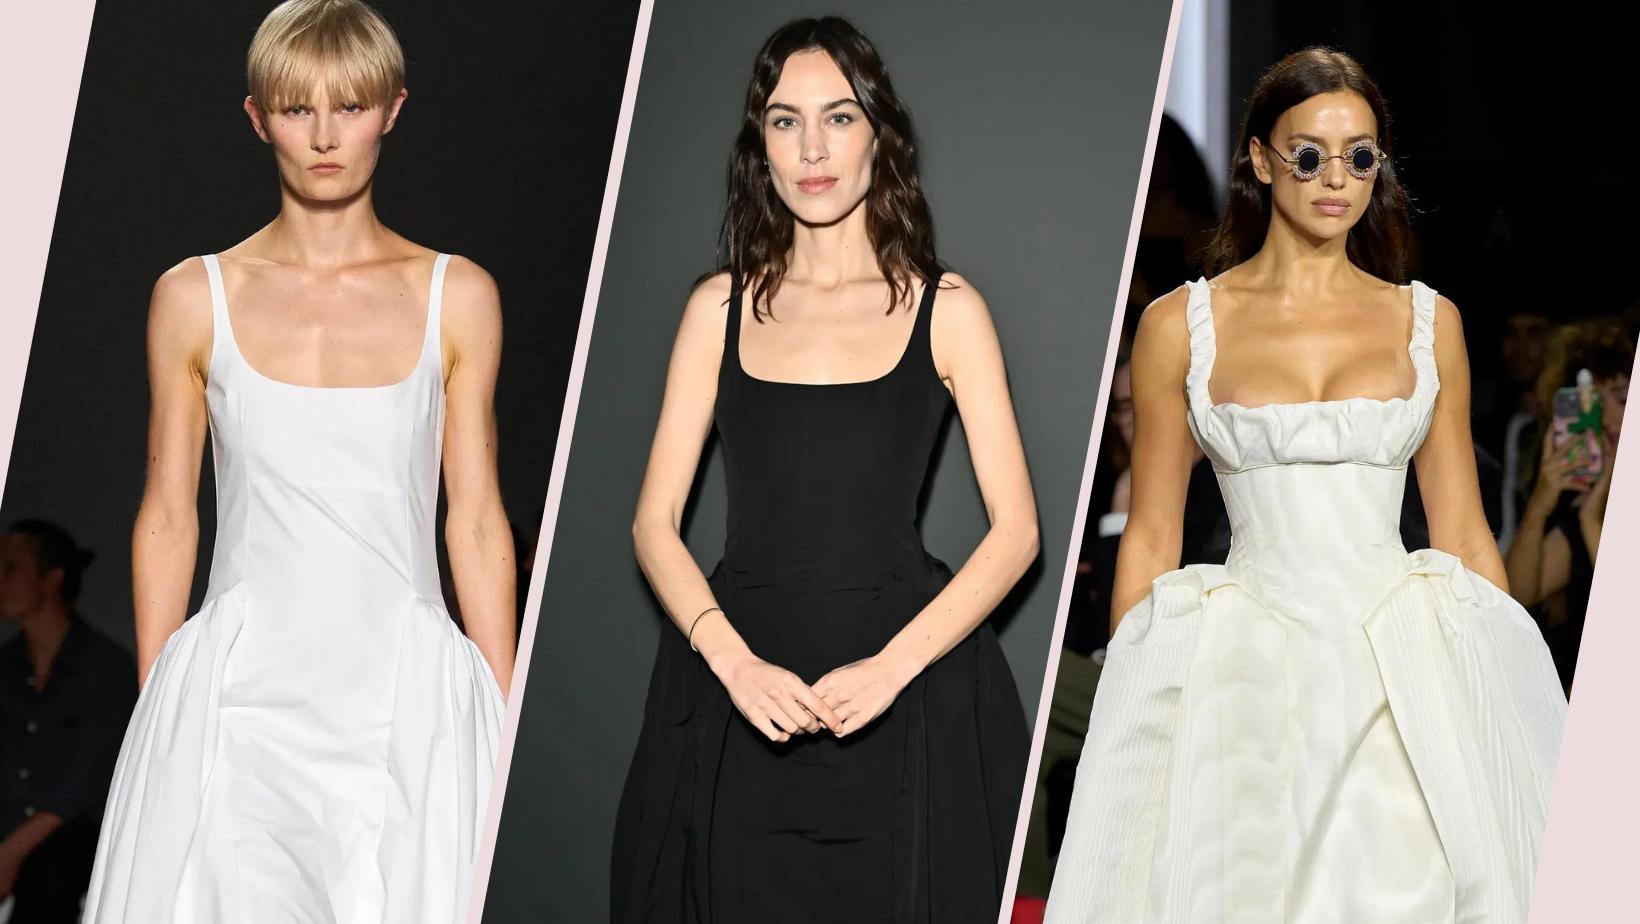 Za ovaj minimalistički model haljina kažu da će biti hit ovoga ljeta, a trendseterice već je obožavaju